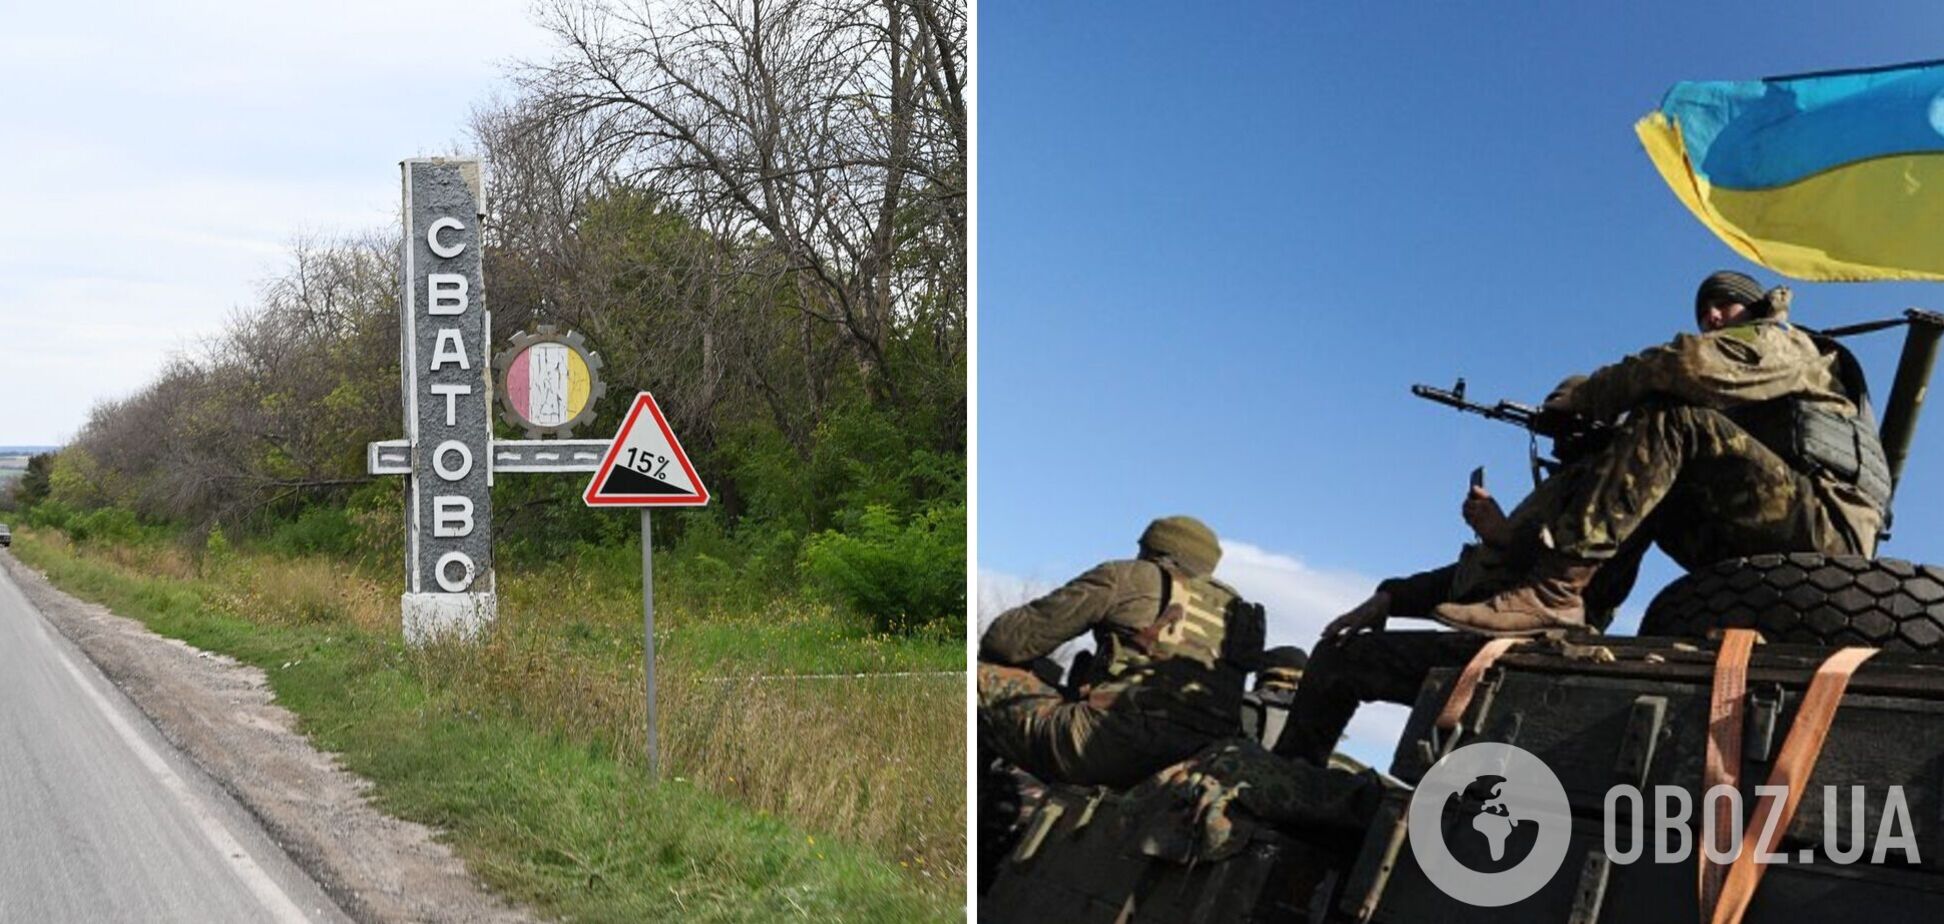 ВСУ ведут контрнаступление в направлении Сватового и Кременной, оккупанты пытаются сдержать напор: анализ боевых действий от ISW